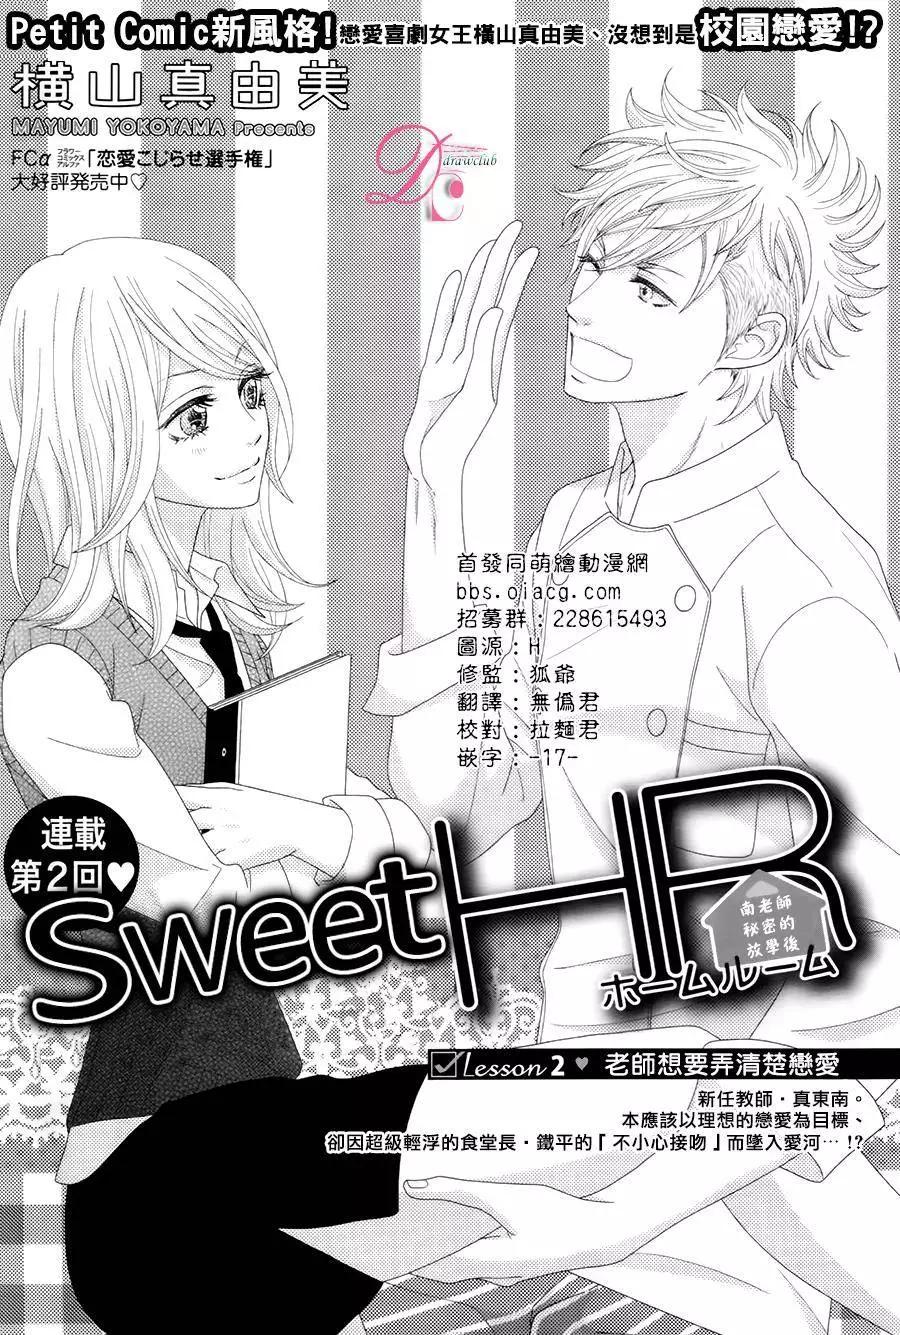 Sweet HR - 第02回 - 1